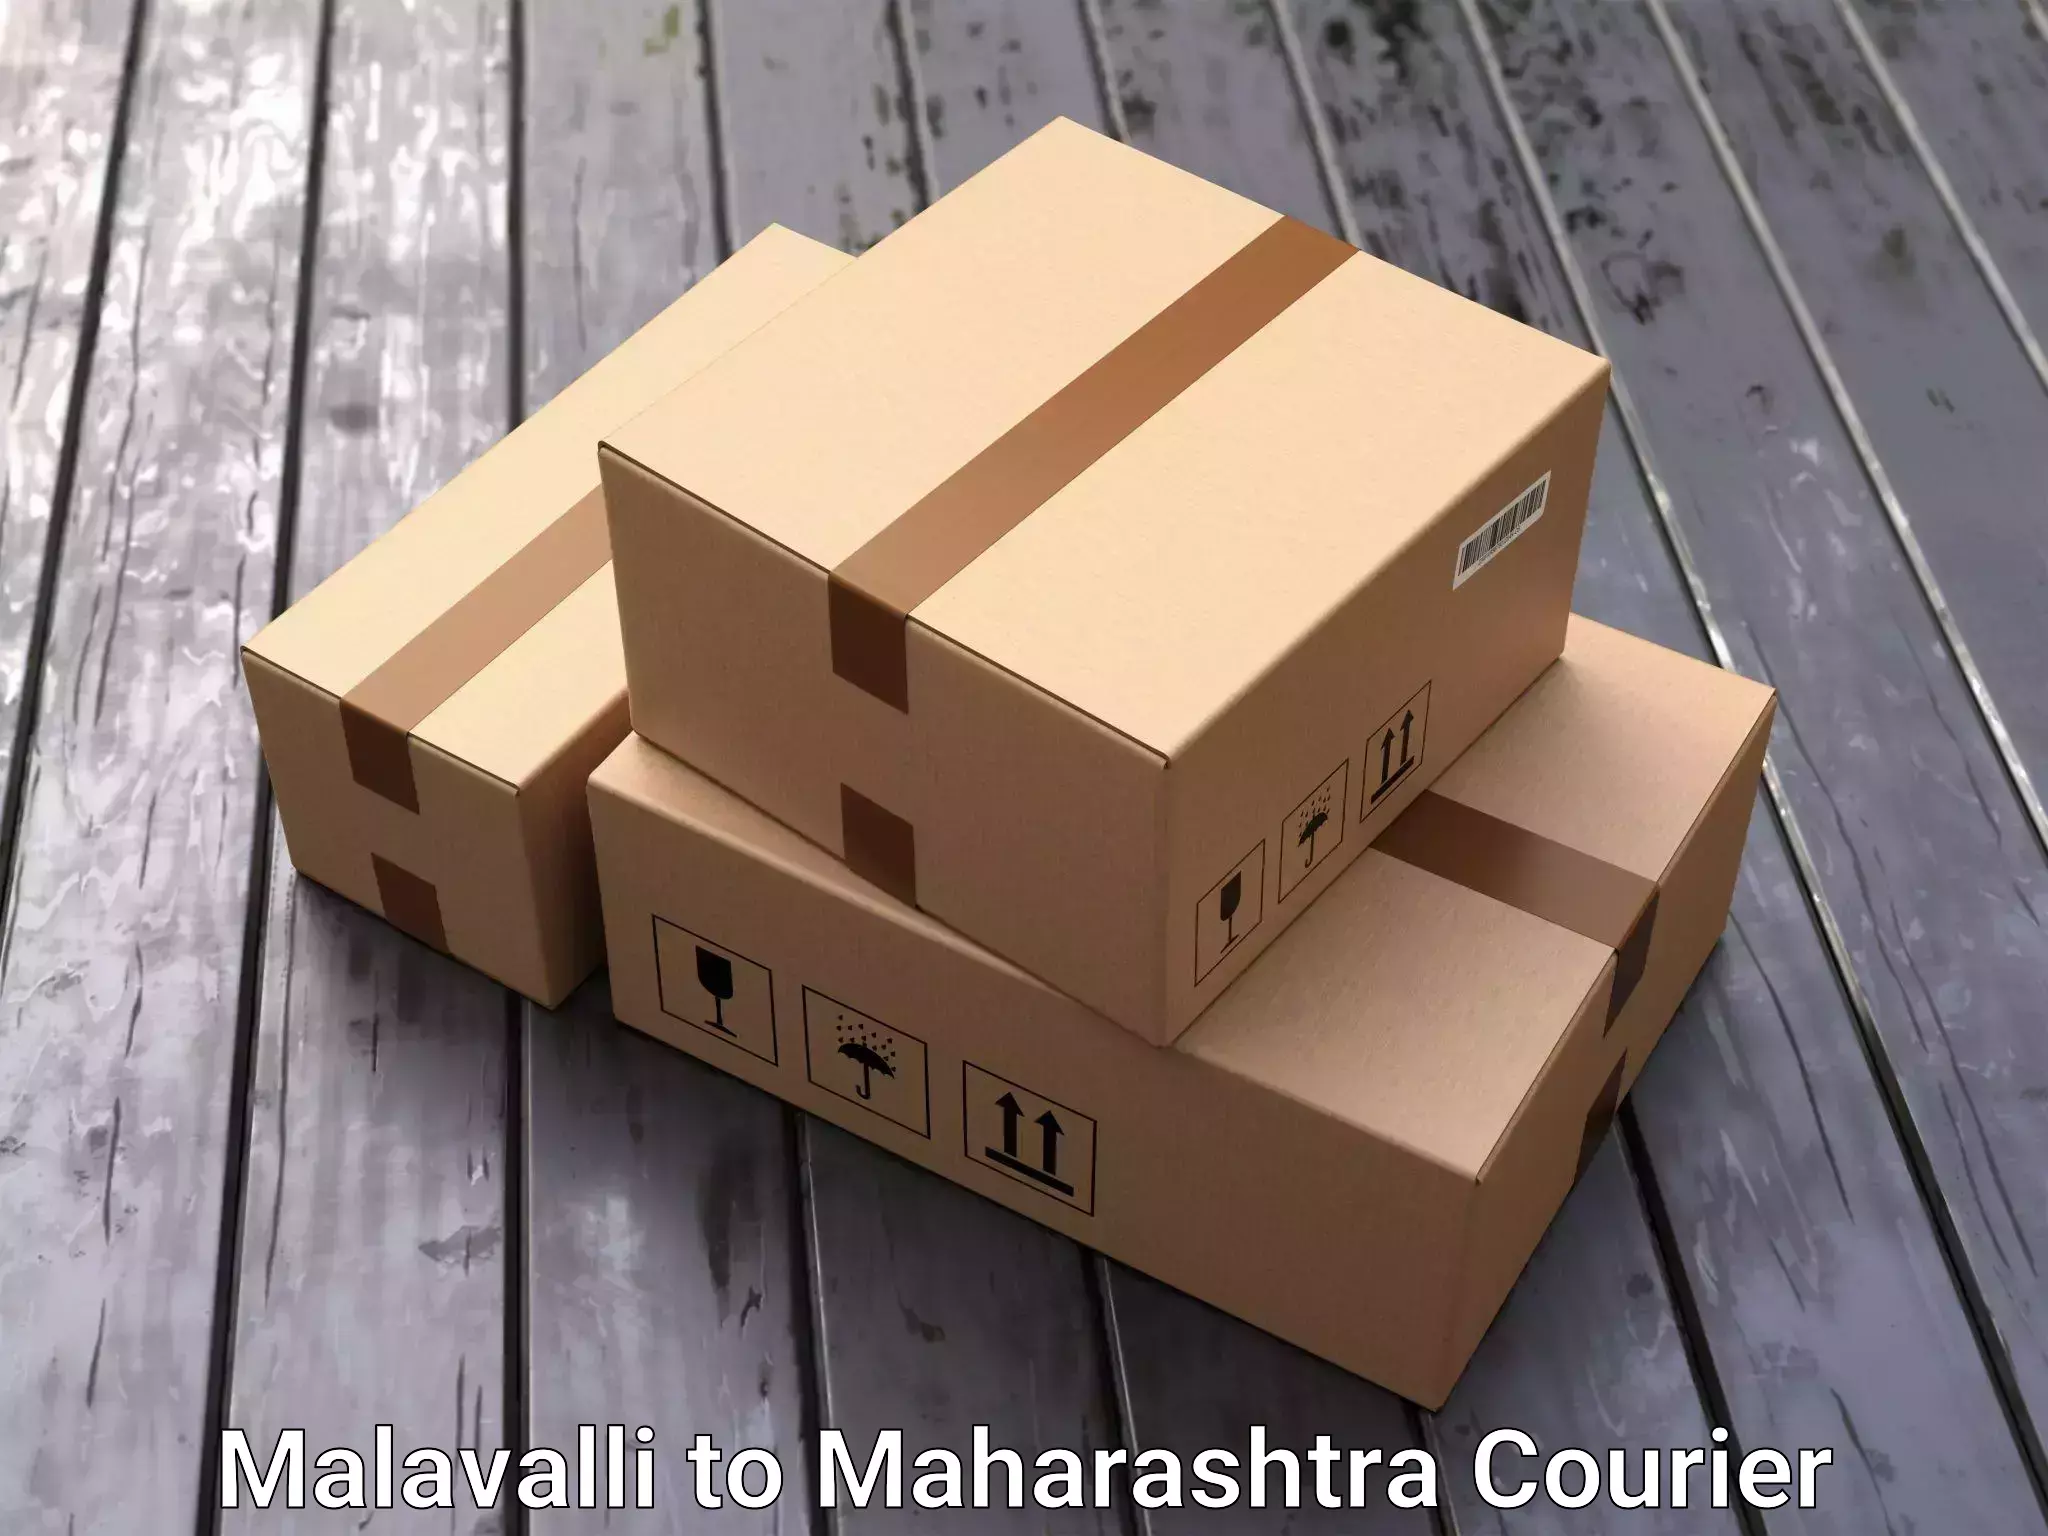 Furniture transport professionals Malavalli to Vairag